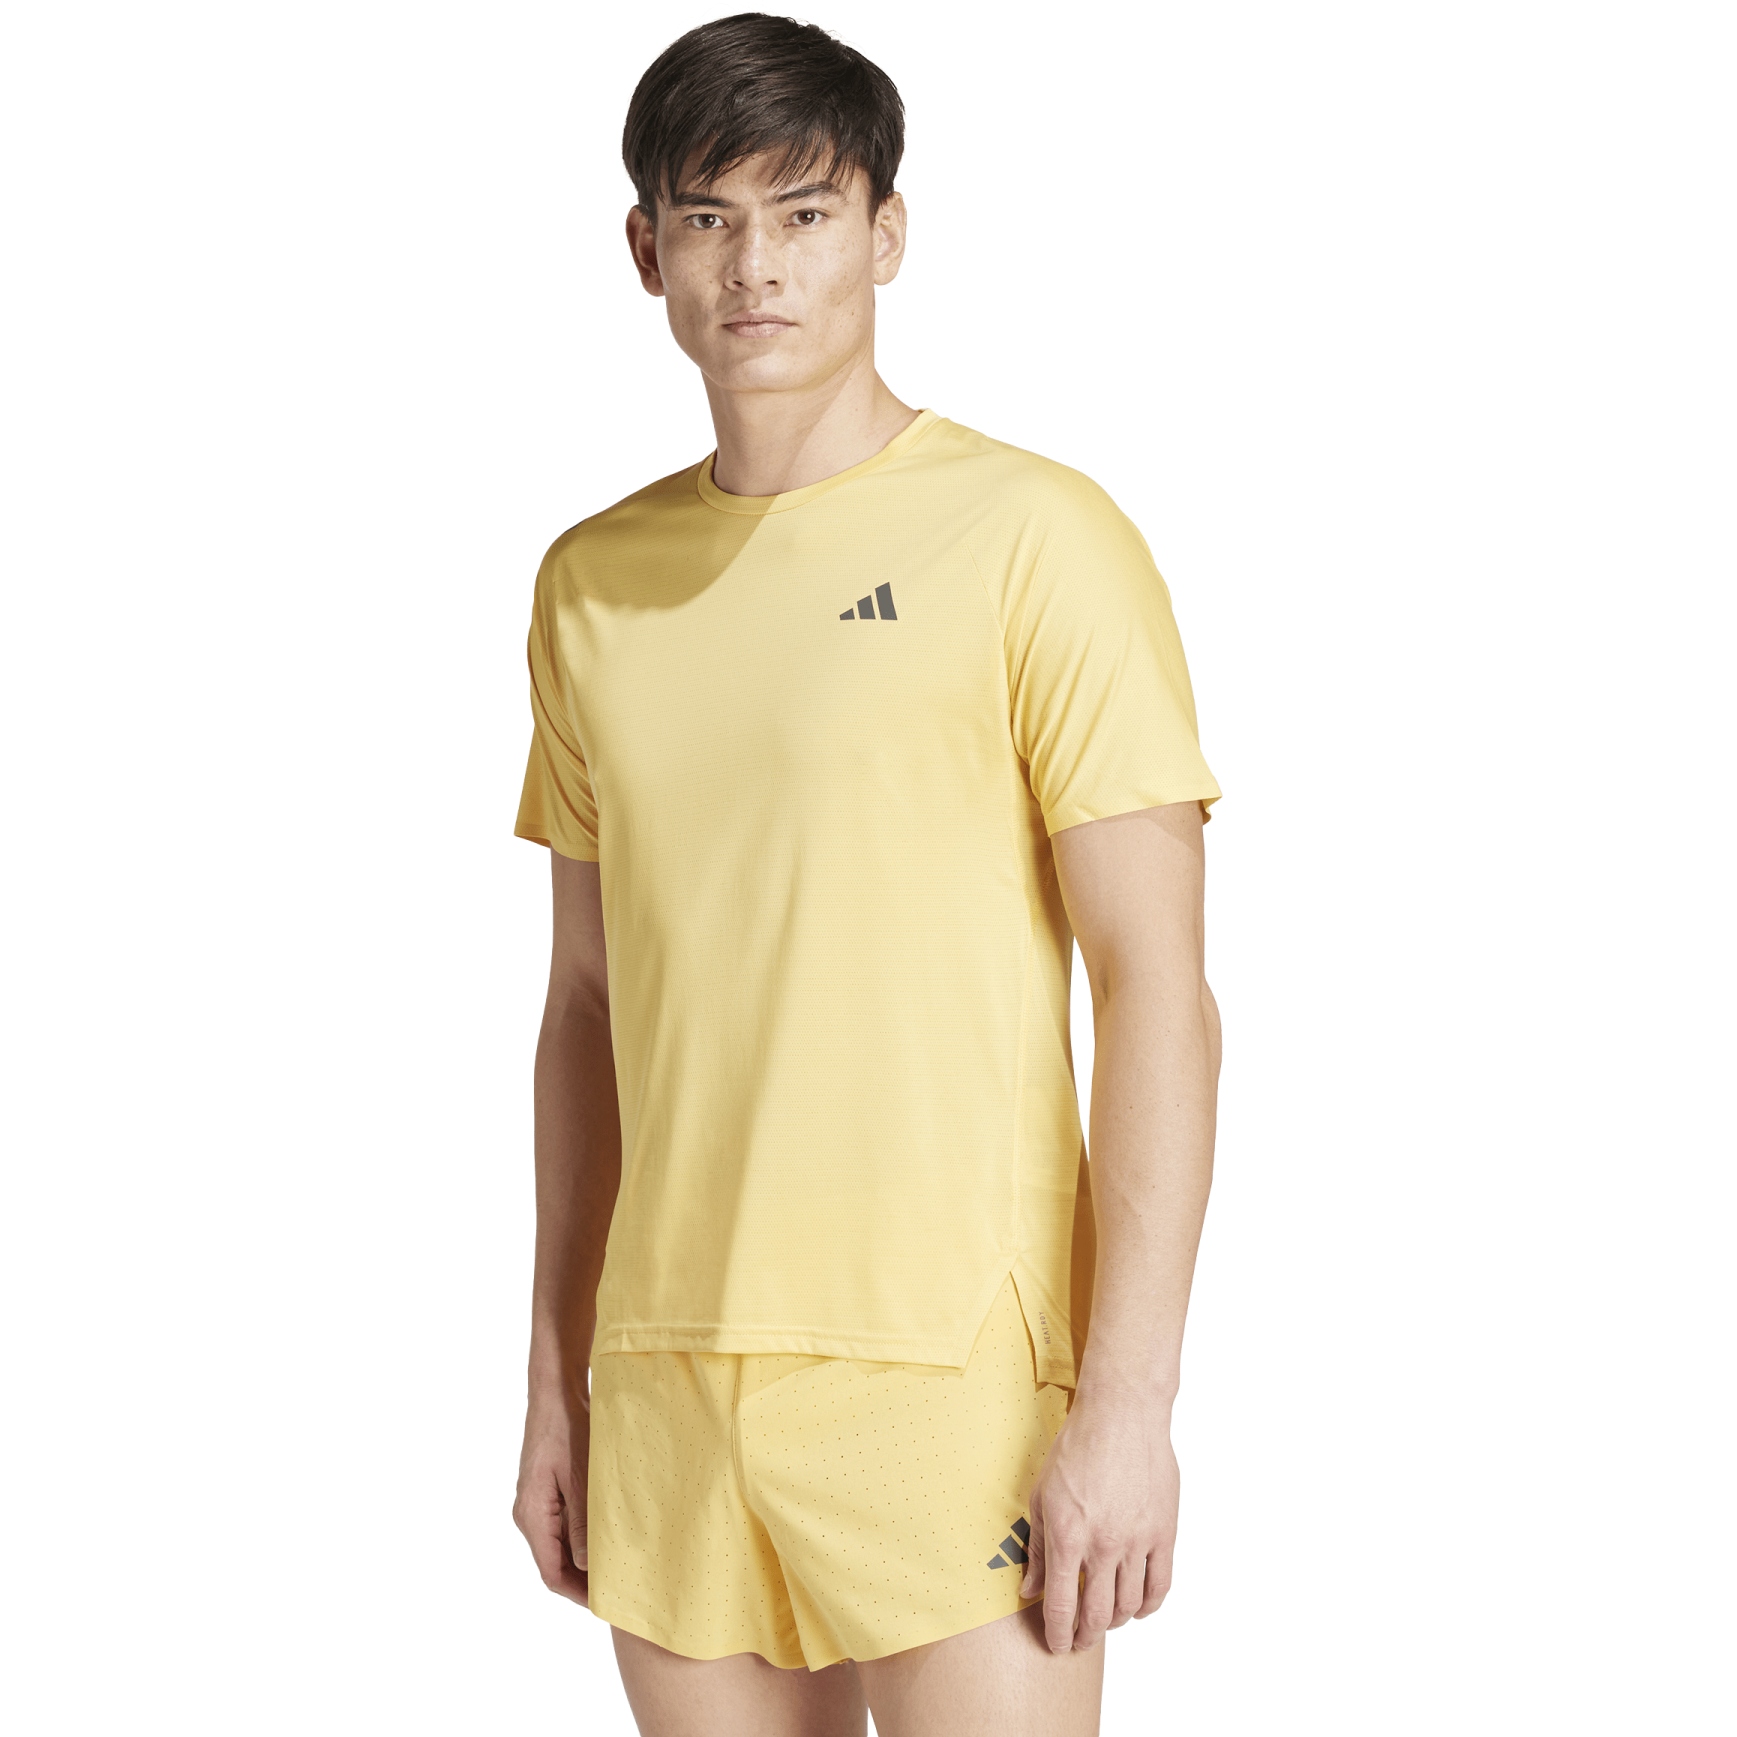 Produktbild von adidas Adizero Running T-Shirt Herren - semi spark/grey six IM9835